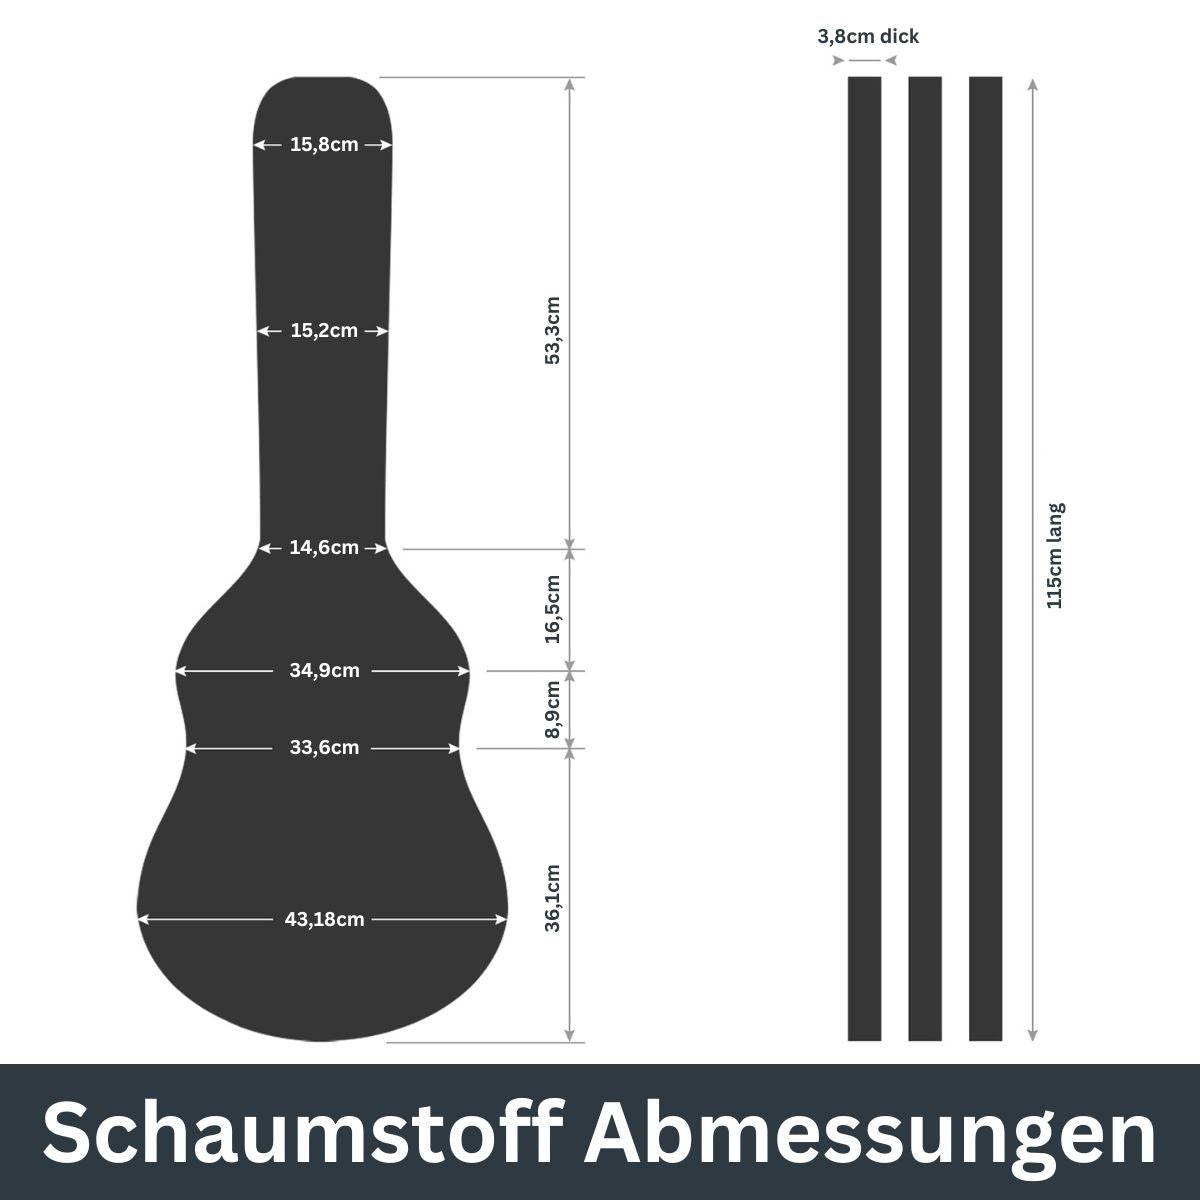 Hartschalenkoffer groß - Gitarren Optik Steingrau